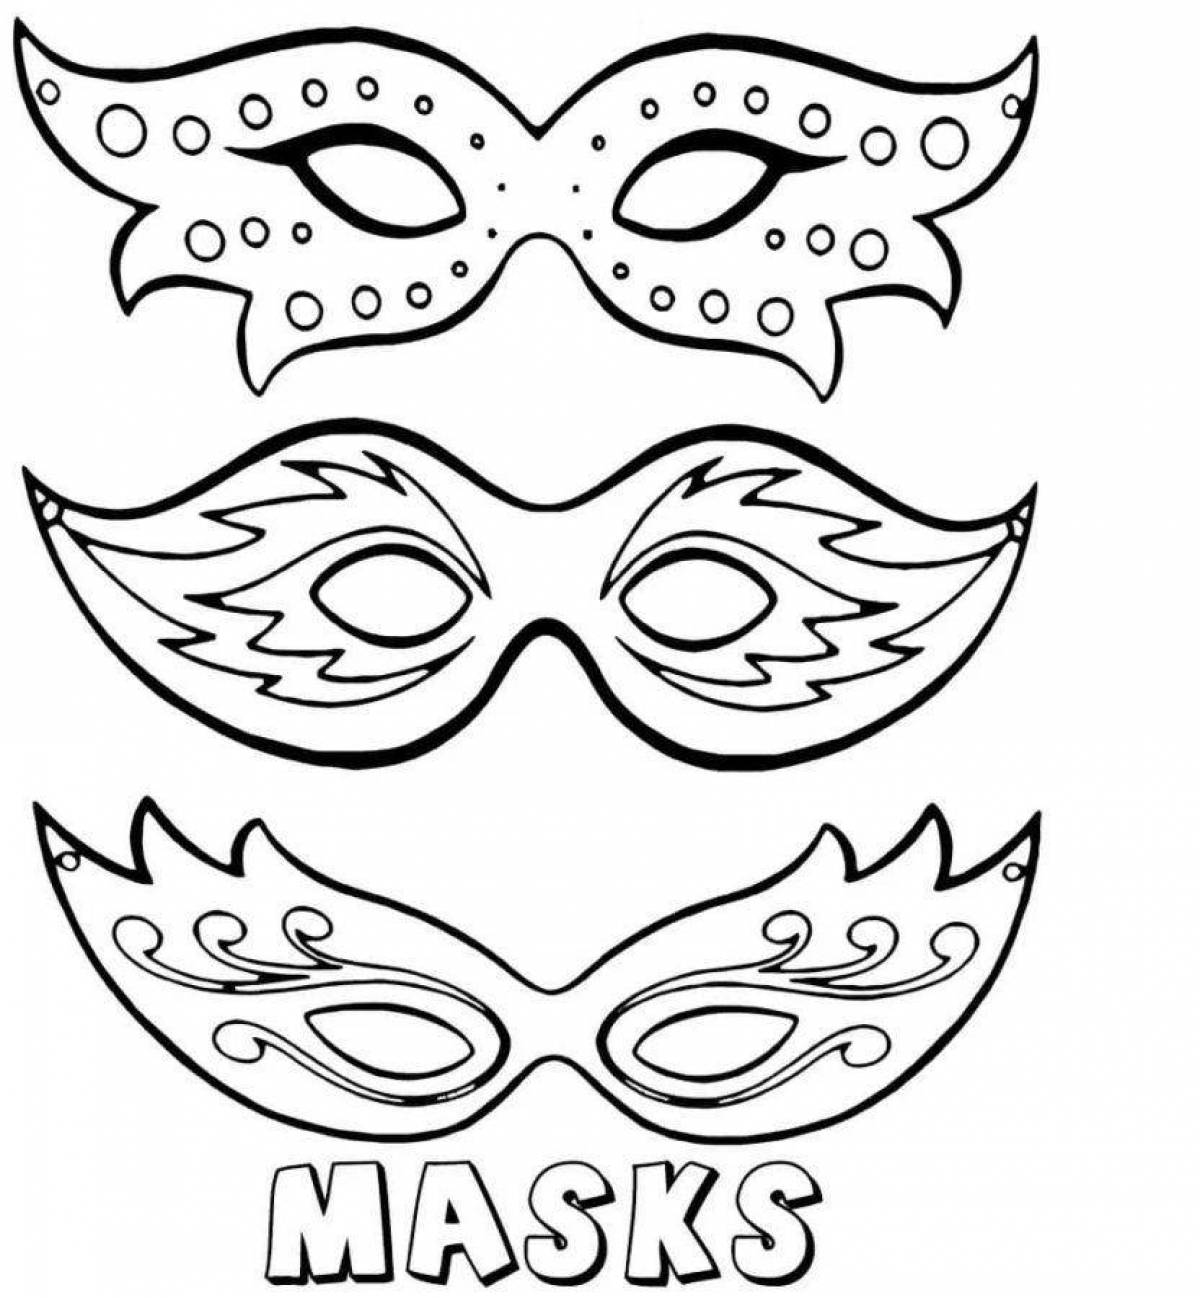 Распечатать картинку маску. Трафарет - маска. Трафарет карнавальной маски. Эскиз маски карнавальной. Маскарадные маски шаблоны для печати.